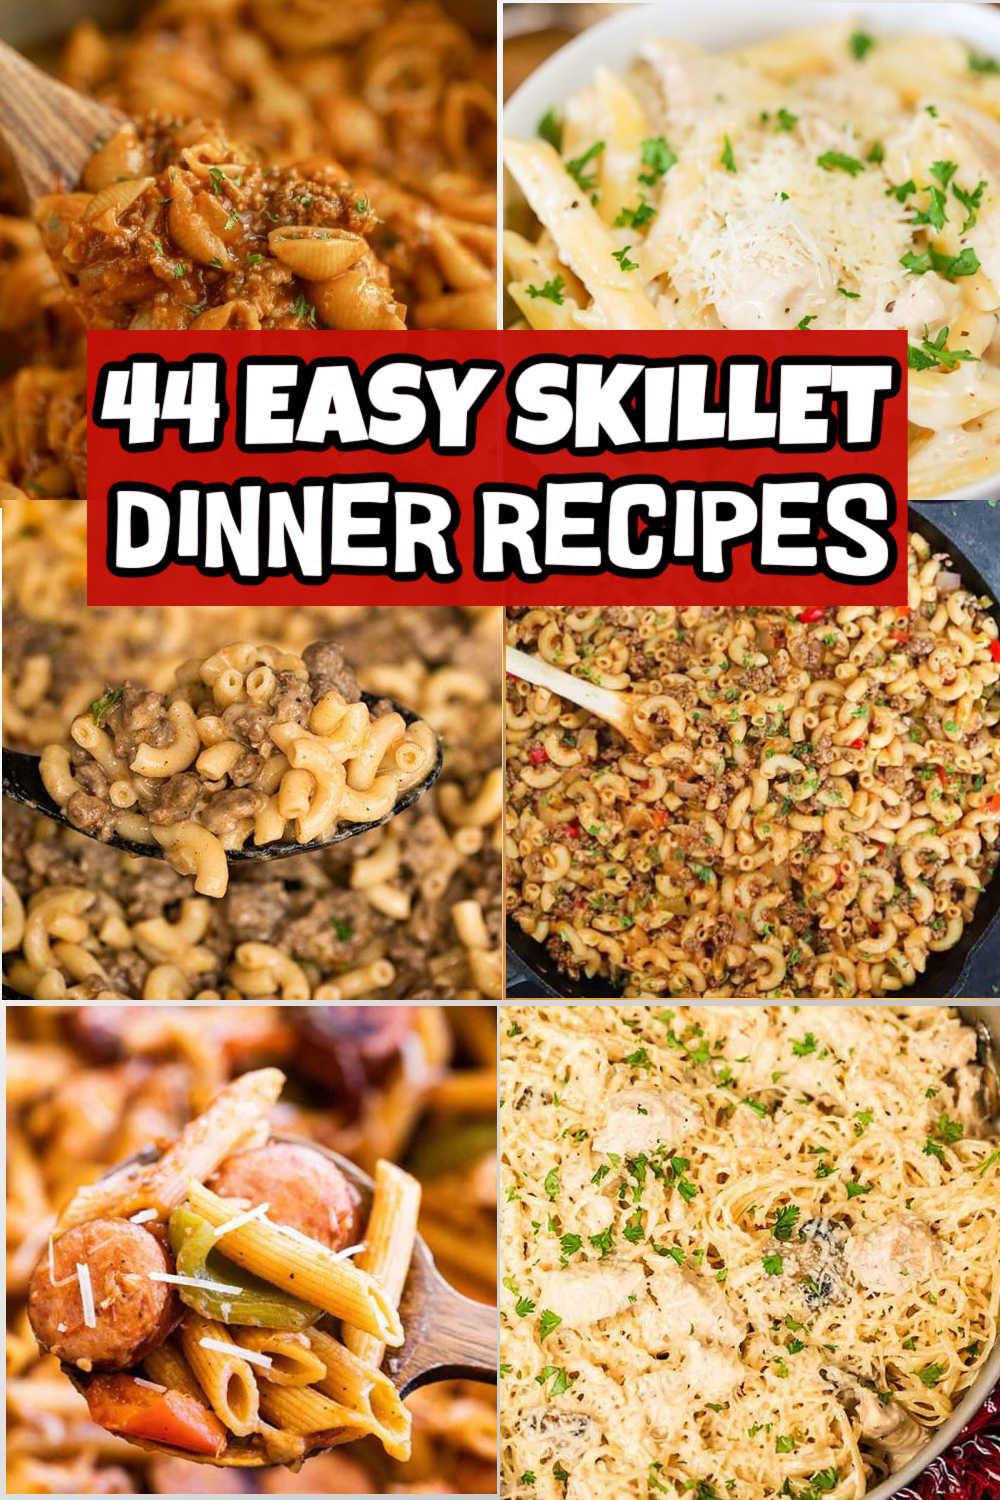 https://www.eatingonadime.com/wp-content/uploads/2023/01/Easy-Skillet-Dinner-Recipes-low.jpg